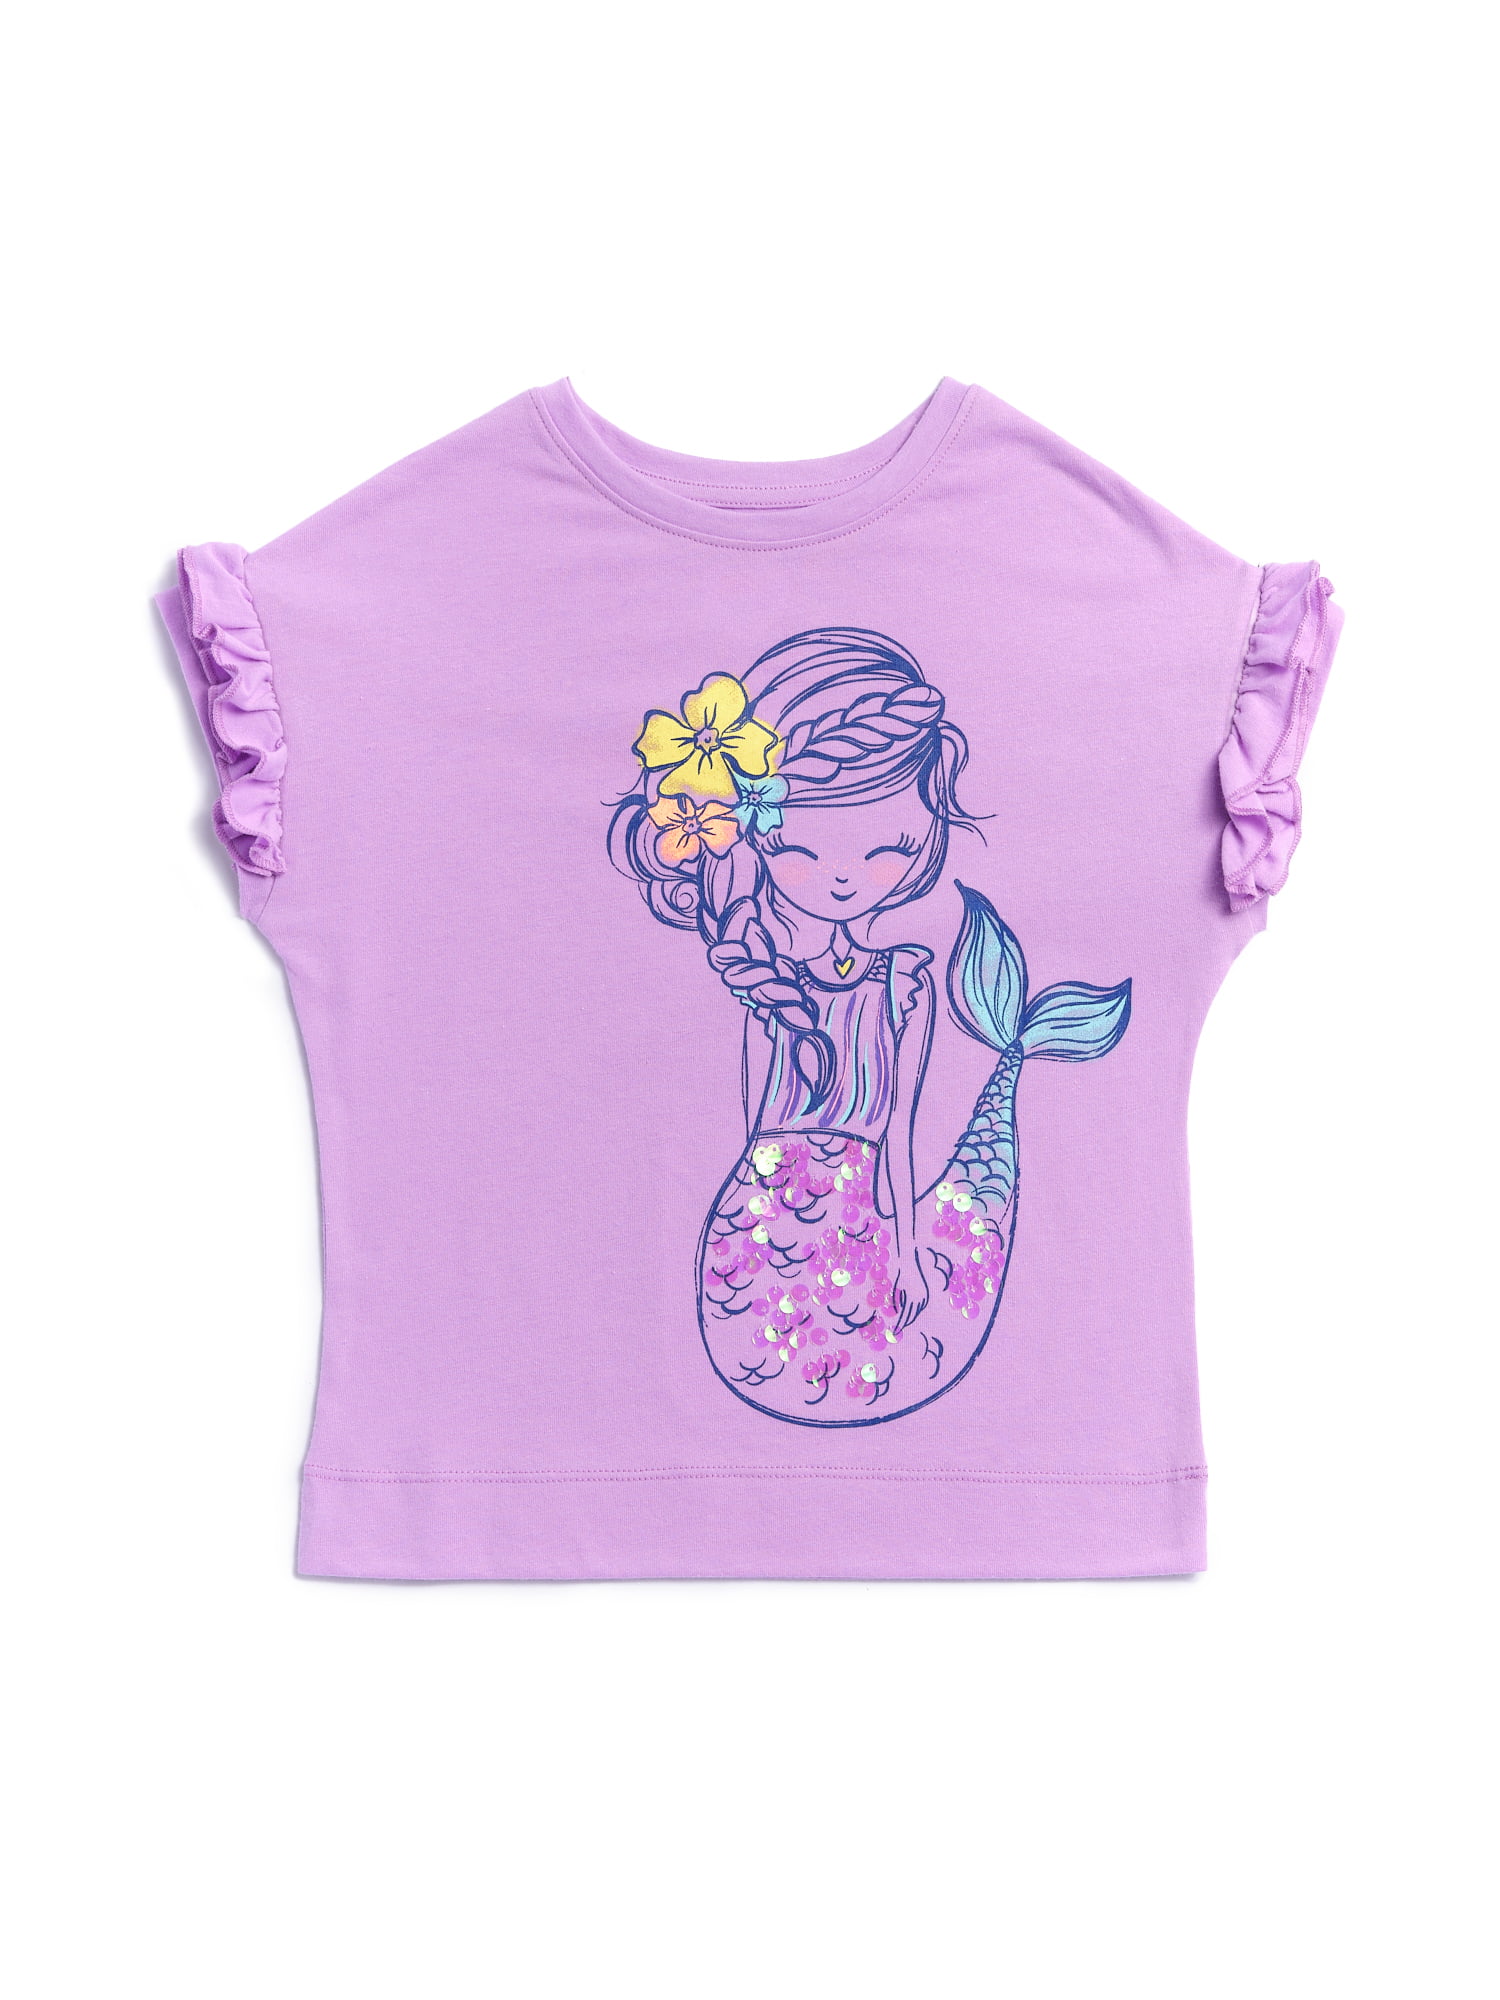 Happy Mermaid Toddler Girls T Shirt Kids Cotton Short Sleeve Ruffle Tee 